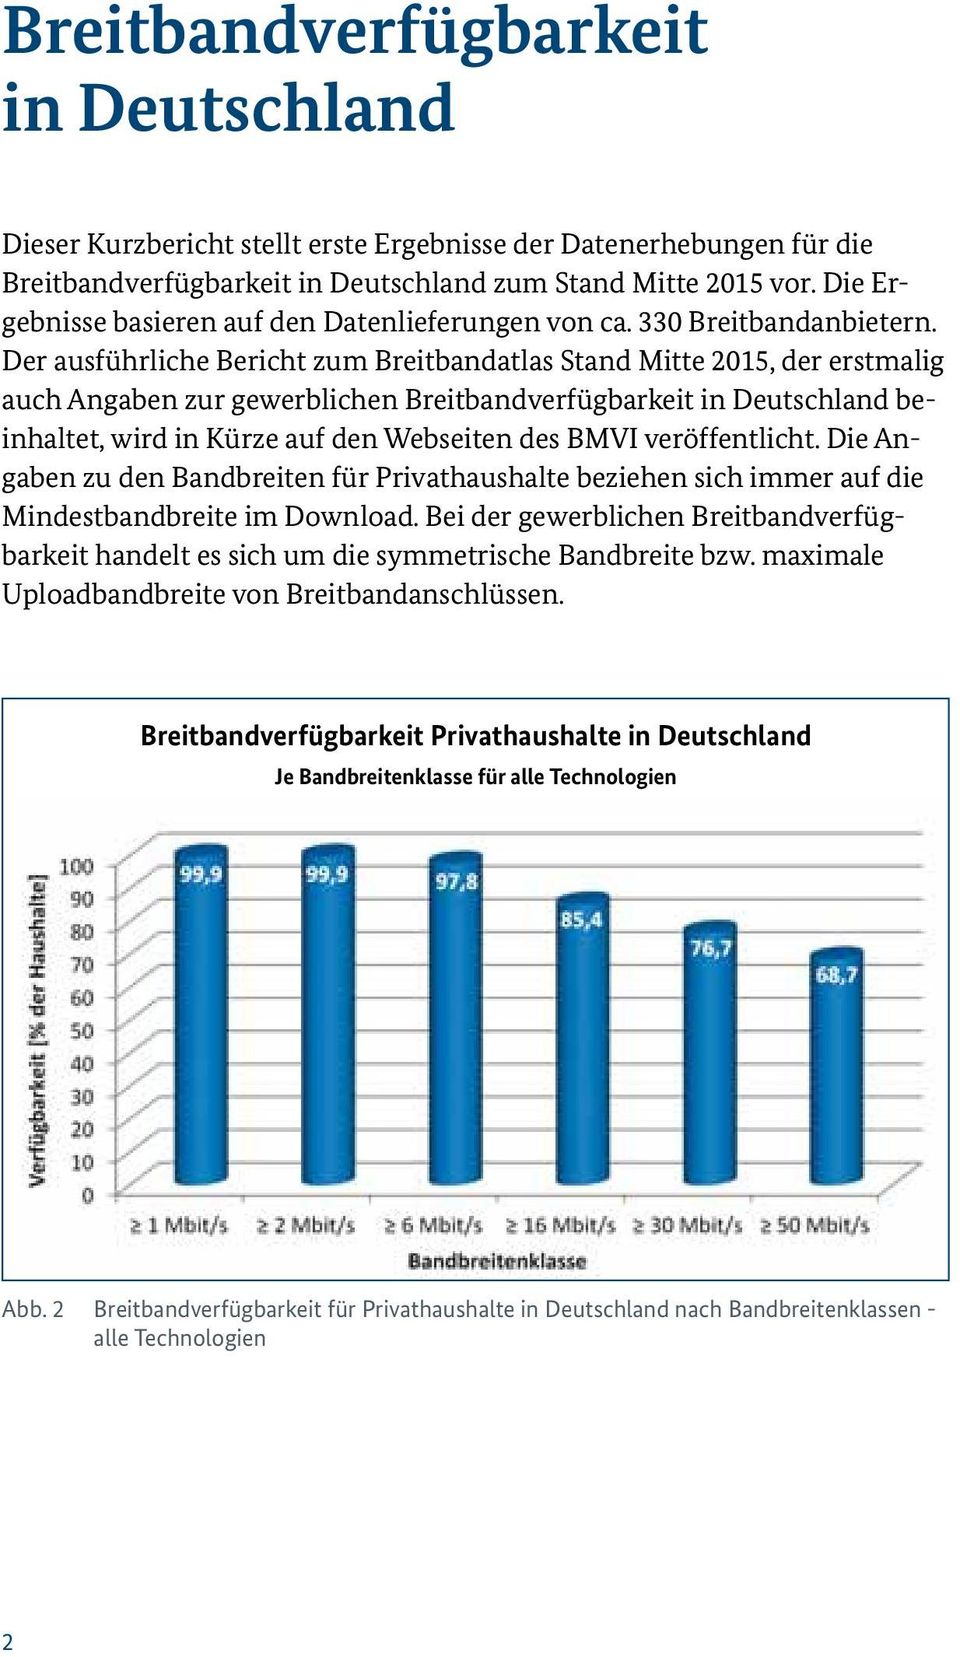 Der ausführliche Bericht zum Breitbandatlas Stand Mitte 2015, der erstmalig auch Angaben zur gewerblichen Breitbandverfügbarkeit in Deutschland beinhaltet, wird in Kürze auf den Webseiten des BMVI